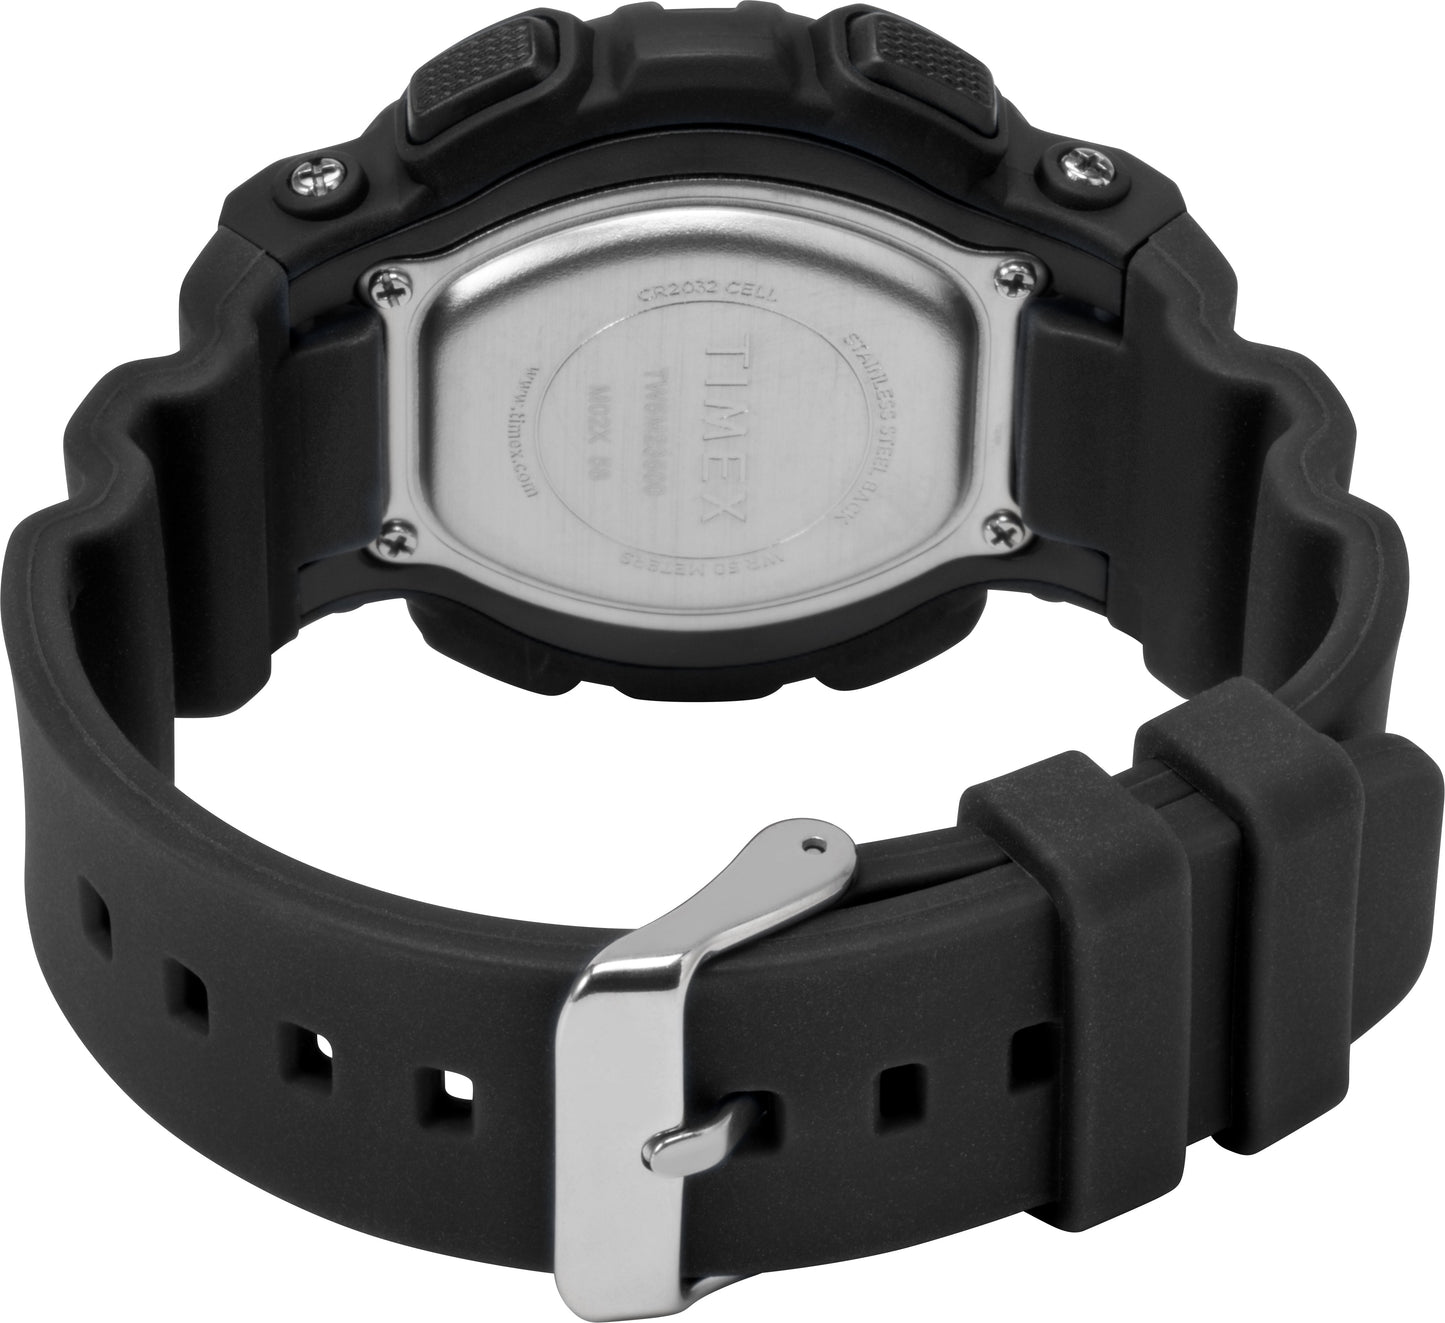 TW5M23600 TIMEX Unisex's Watch